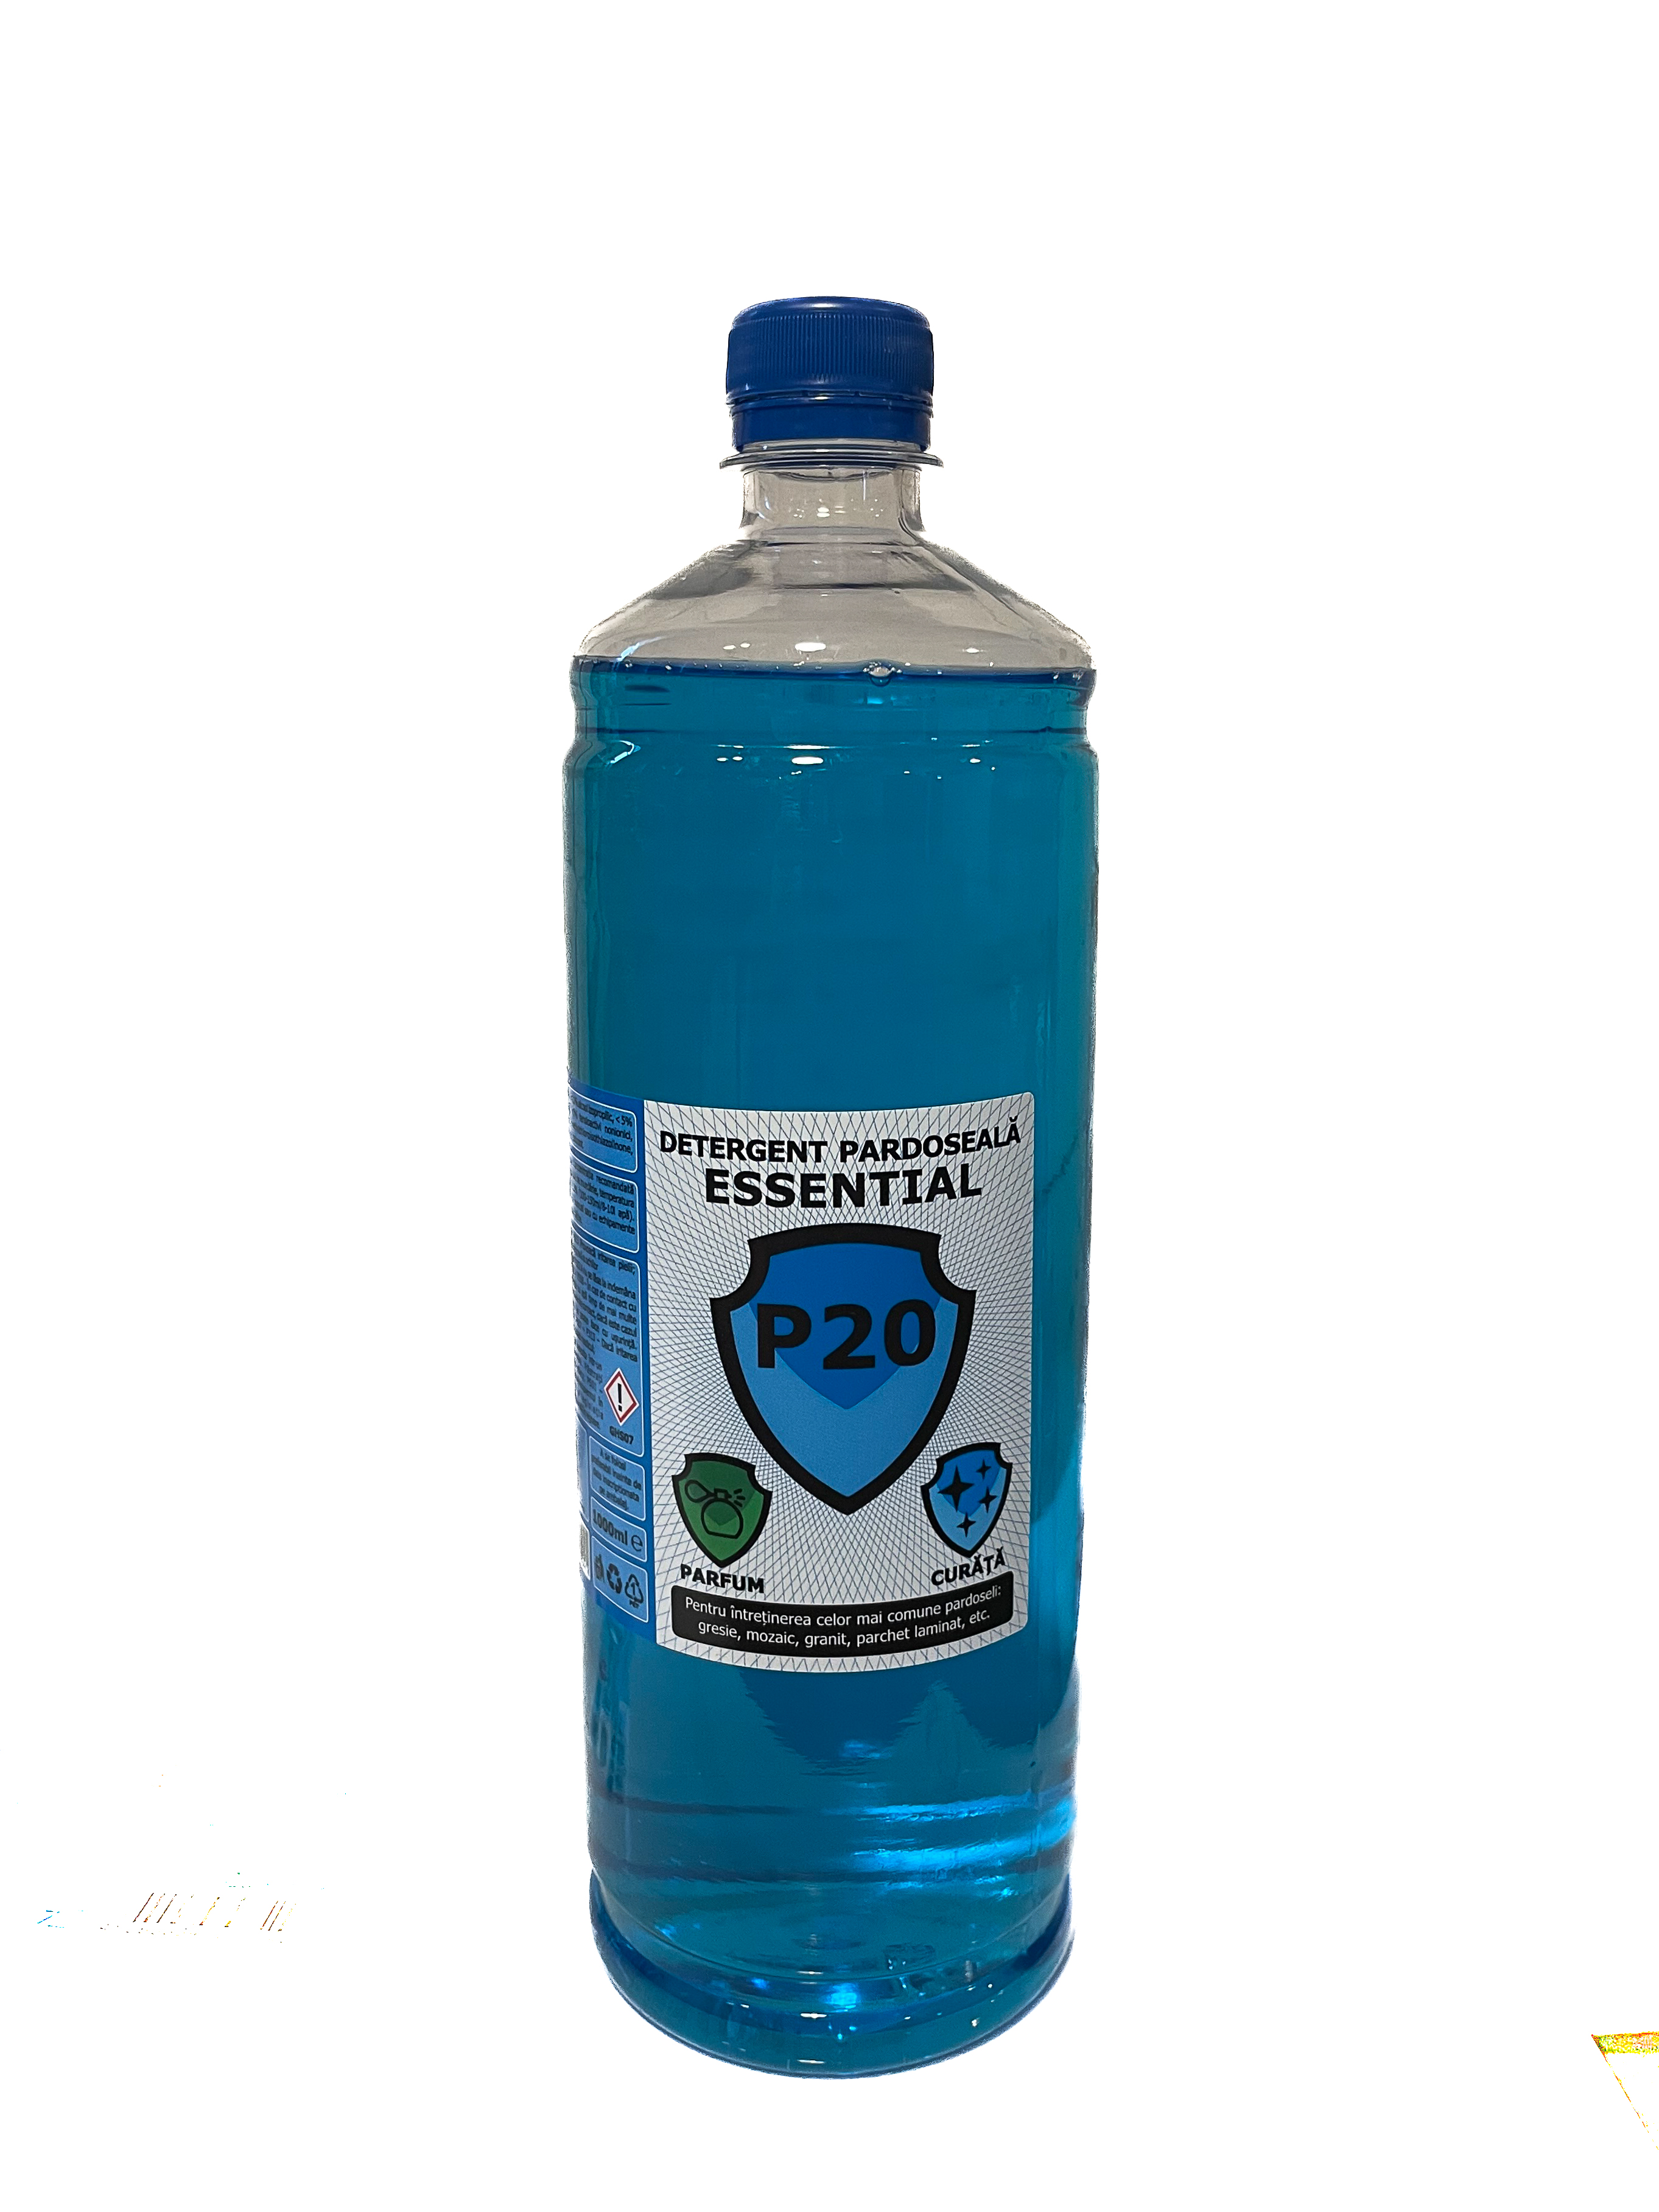 Detergent pardoseala Essential P20 1000ml